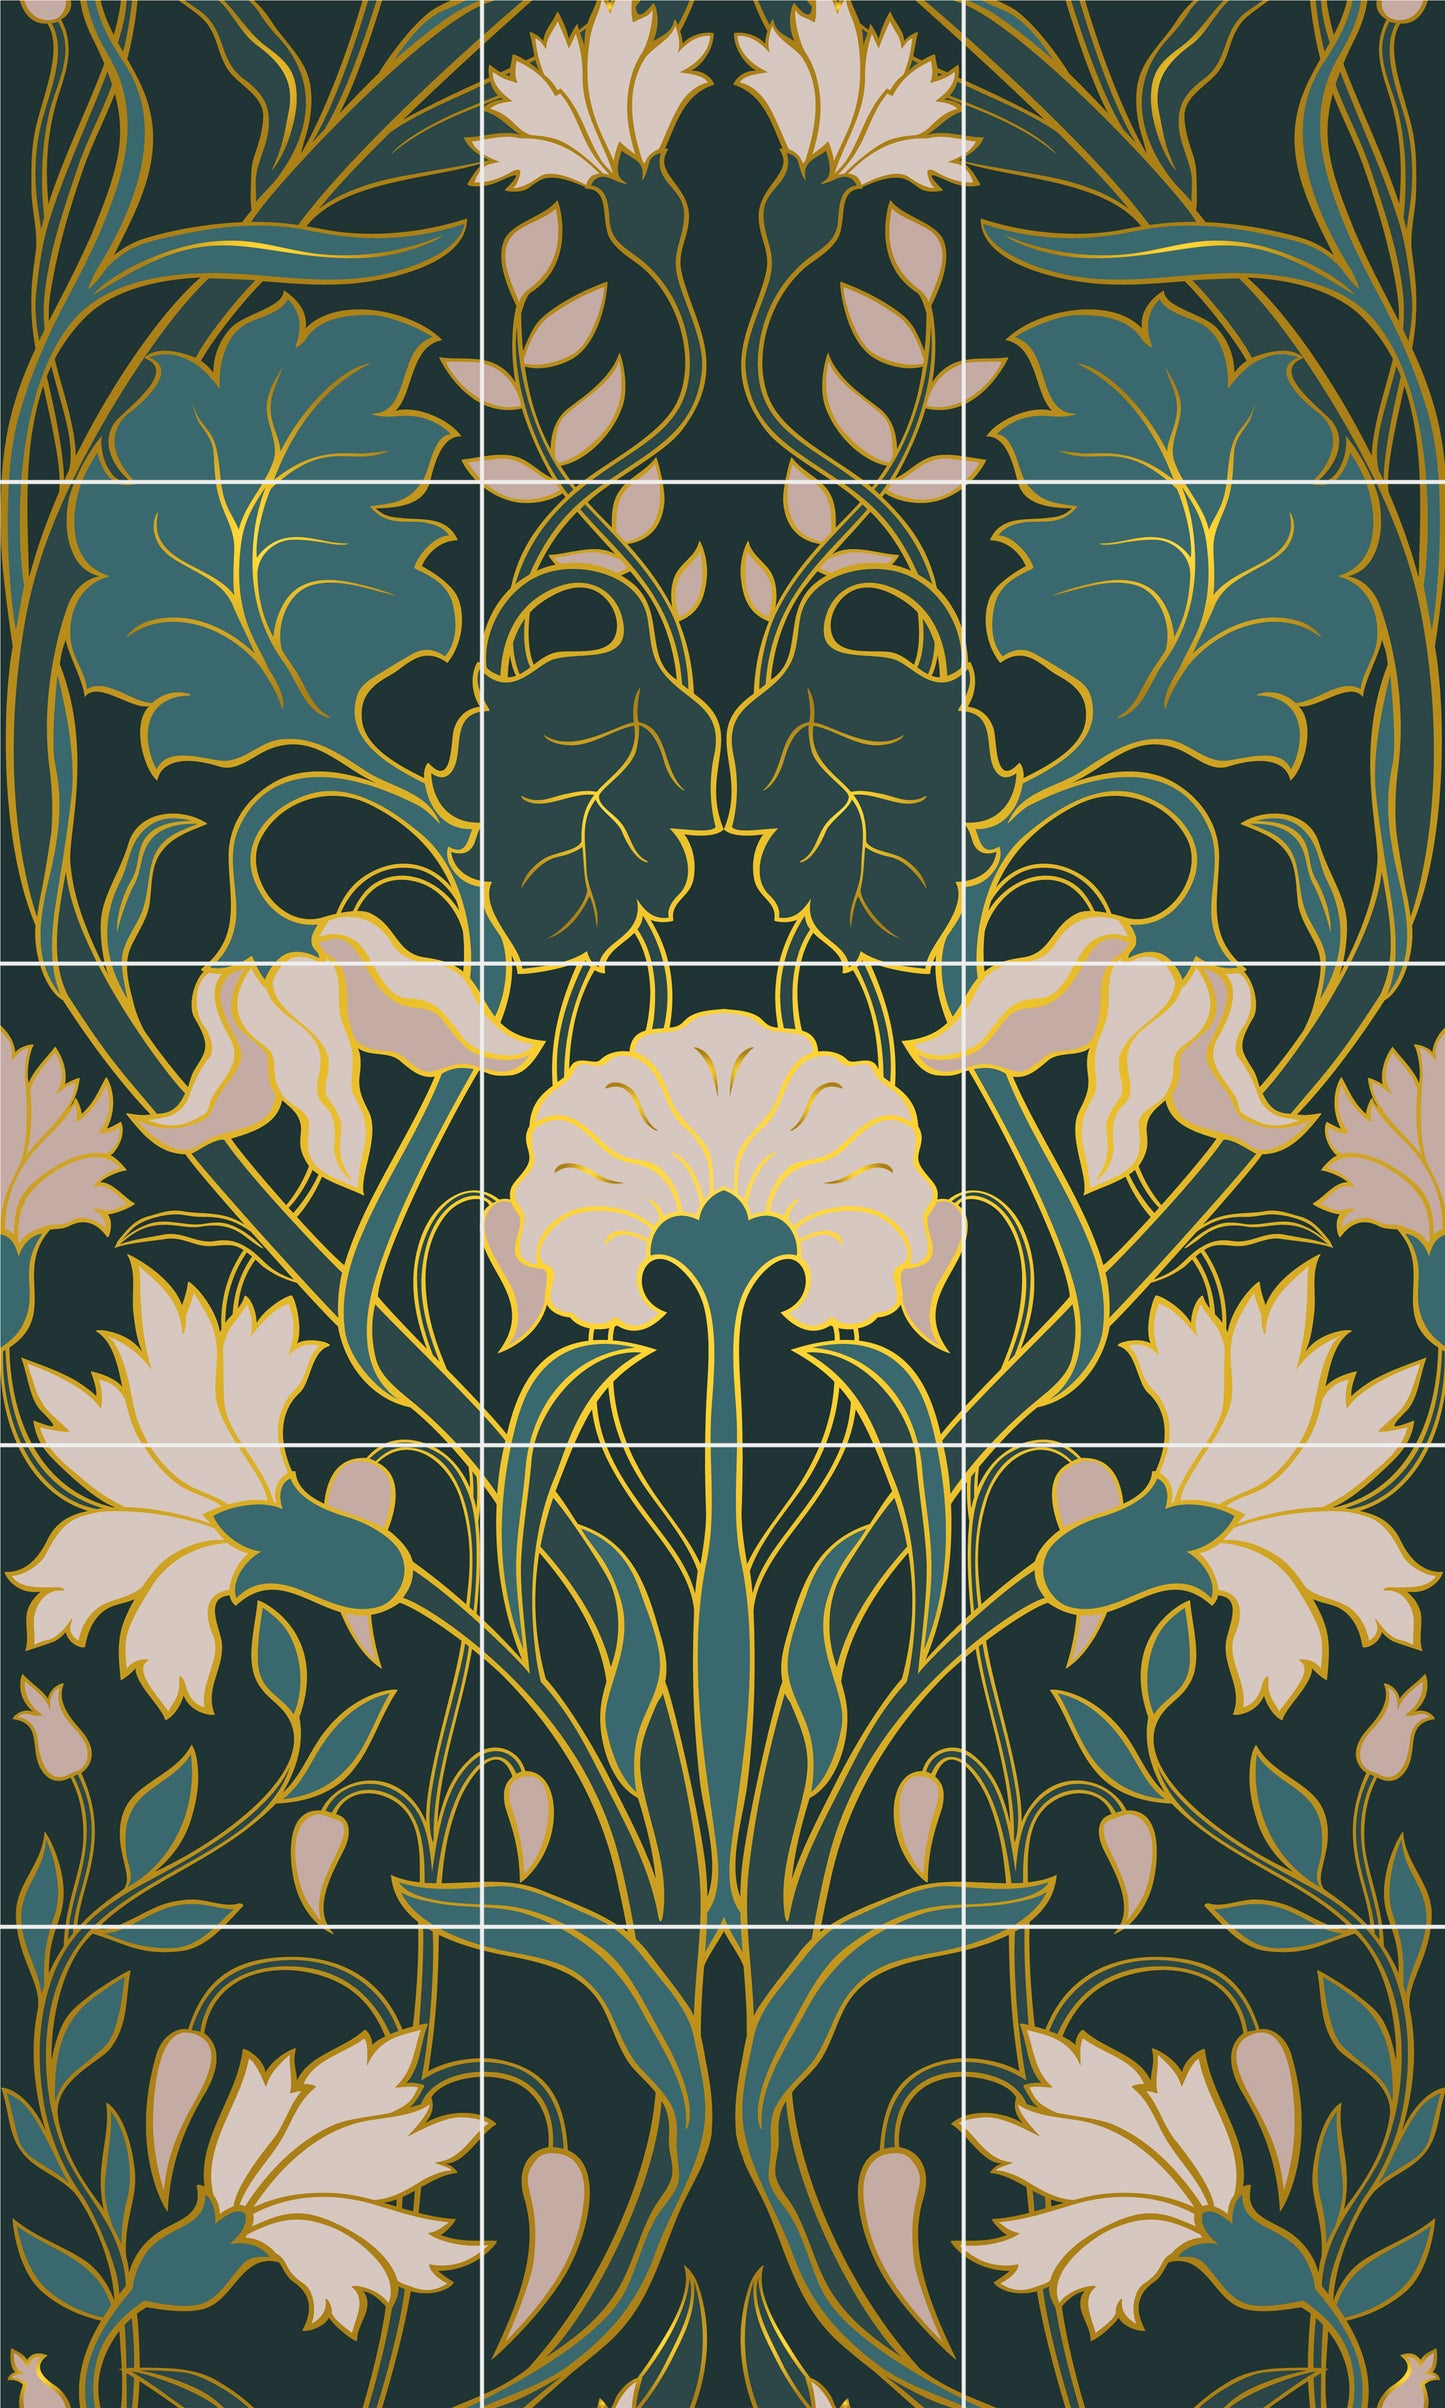 Art Nouveau Floral Ceramic Tile Mural/Mosaic - Art Nouveau Wall Decor Tiles - Flower Mural - Floral Print - Kitchen Backsplash Tiles